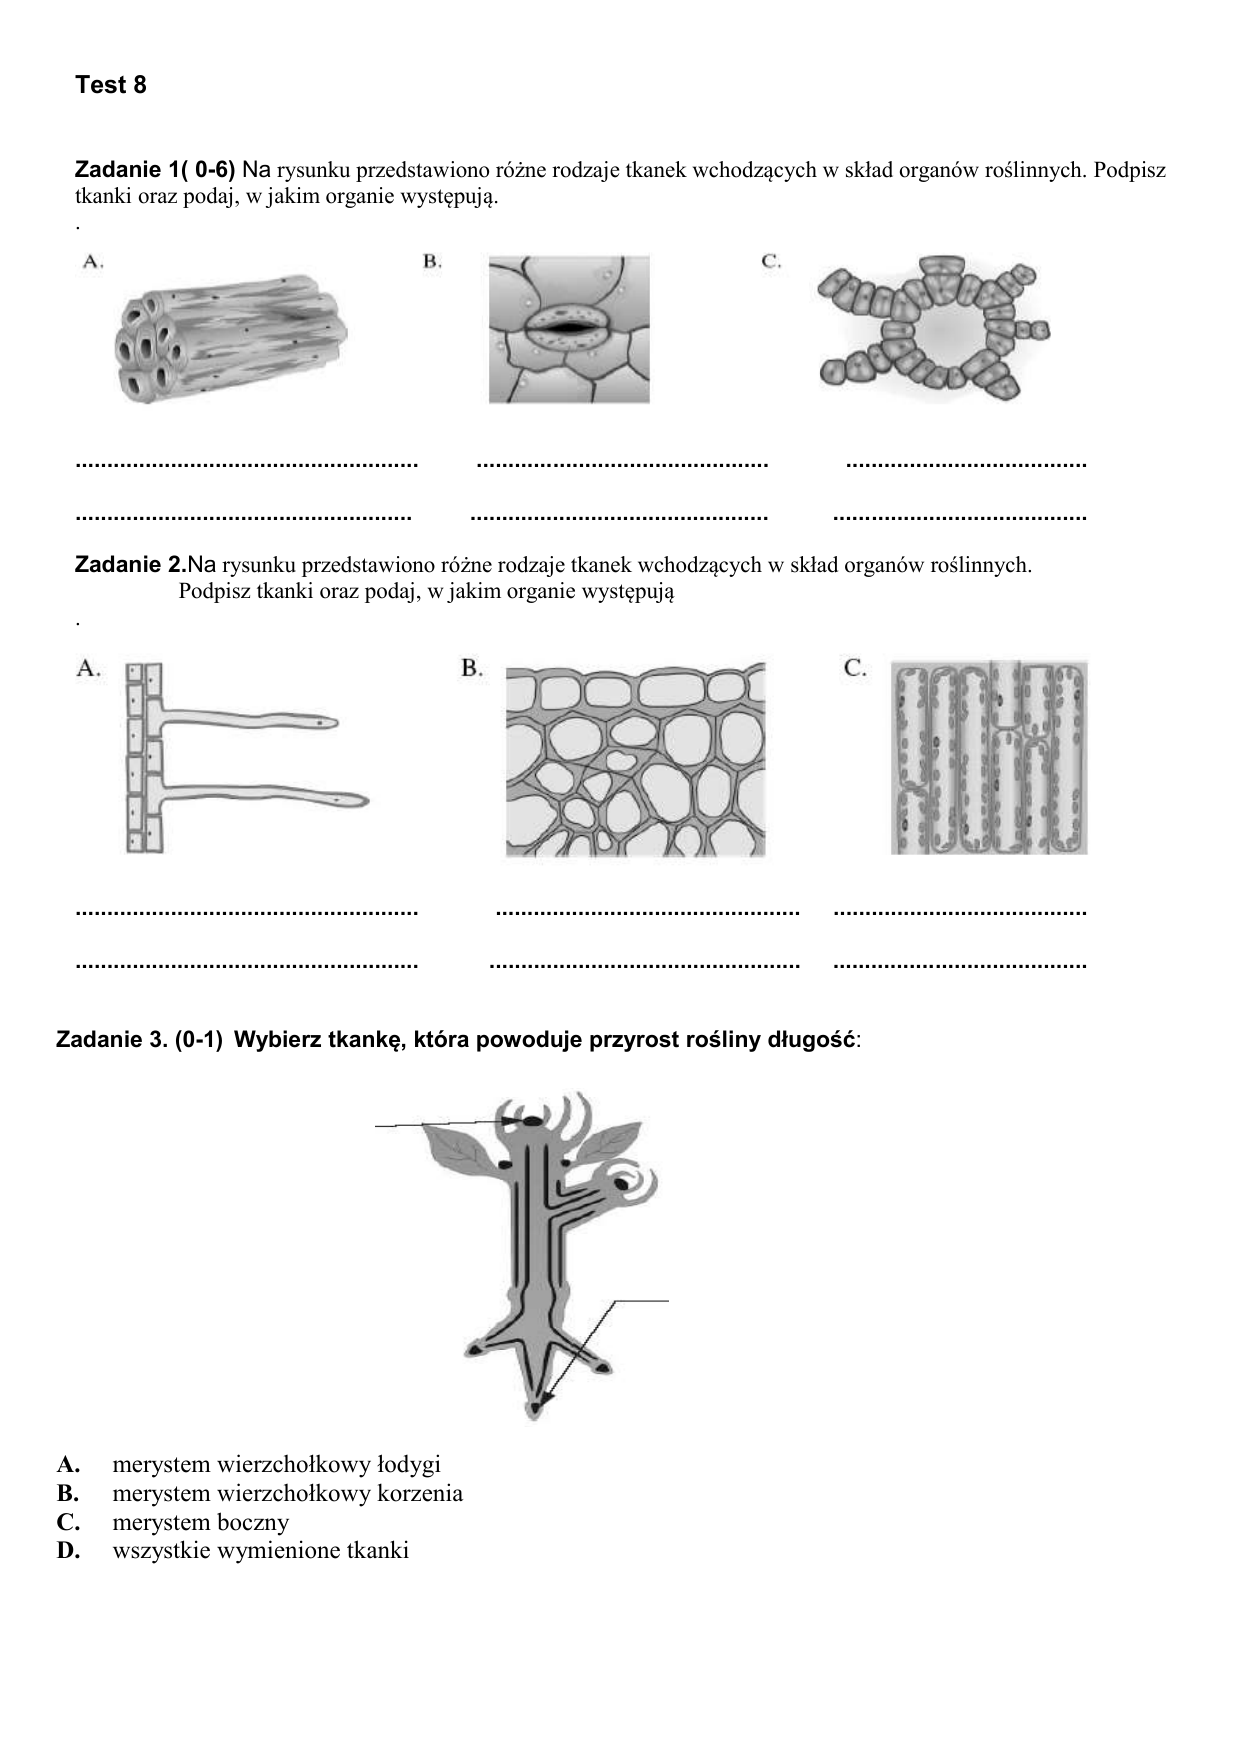 Sprawdzian Z Biologi Klasa 5 Dział 4 Sprawdzian Z Biologi Klasa 5 Tkanki I Organy Roślinne - Margaret Wiegel